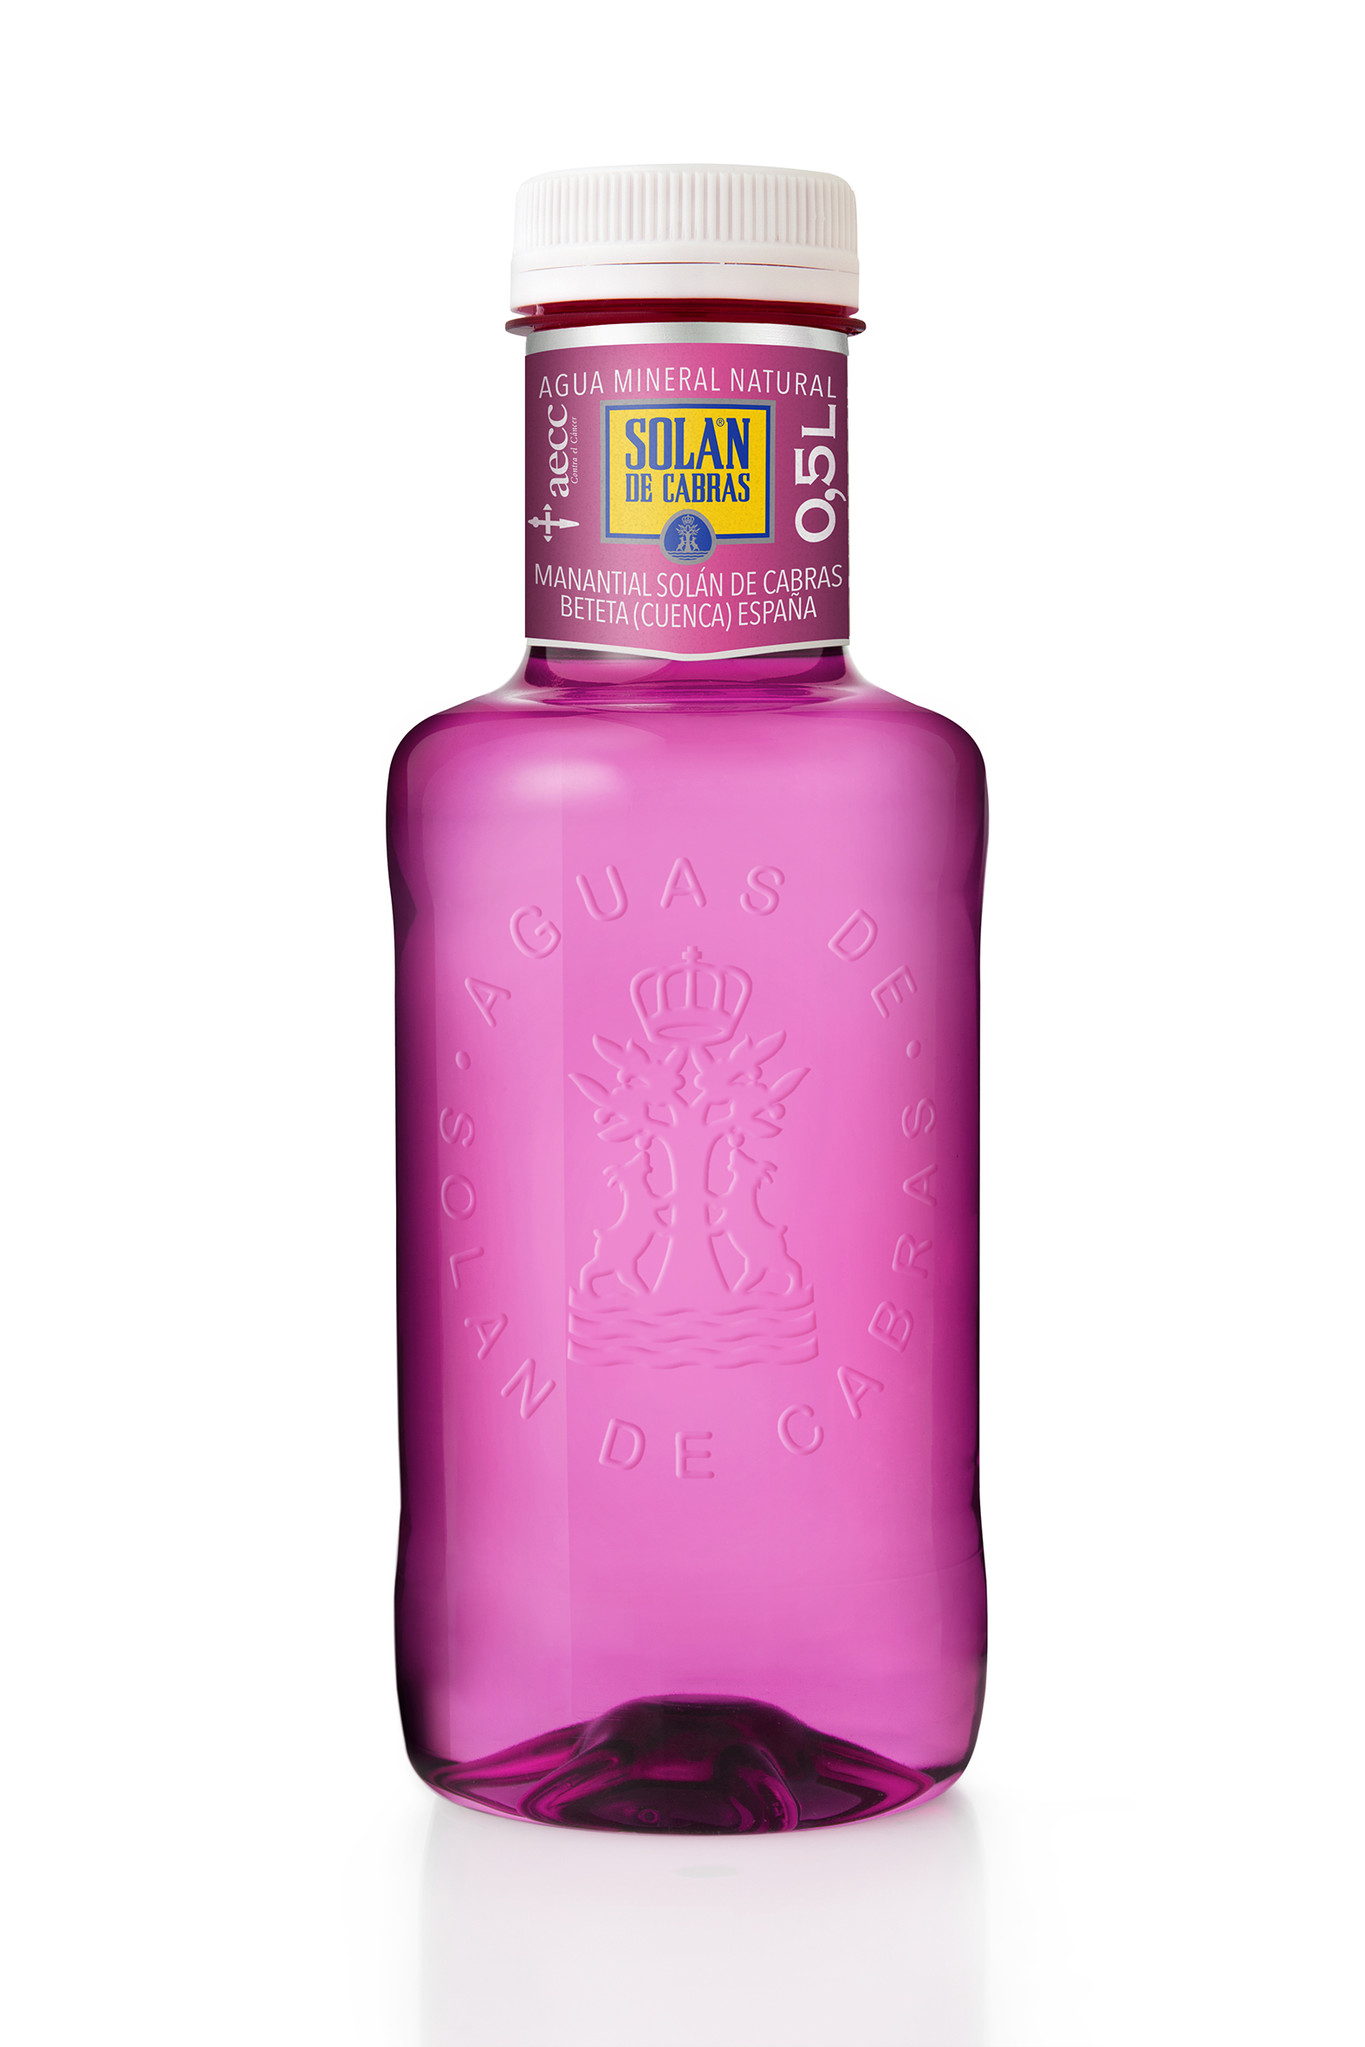 スペインで愛され続ける水 ソラン デ カブラス ピンクリボン運動支援 限定ピンクボトル発売 スリーボンド貿易株式会社のプレスリリース